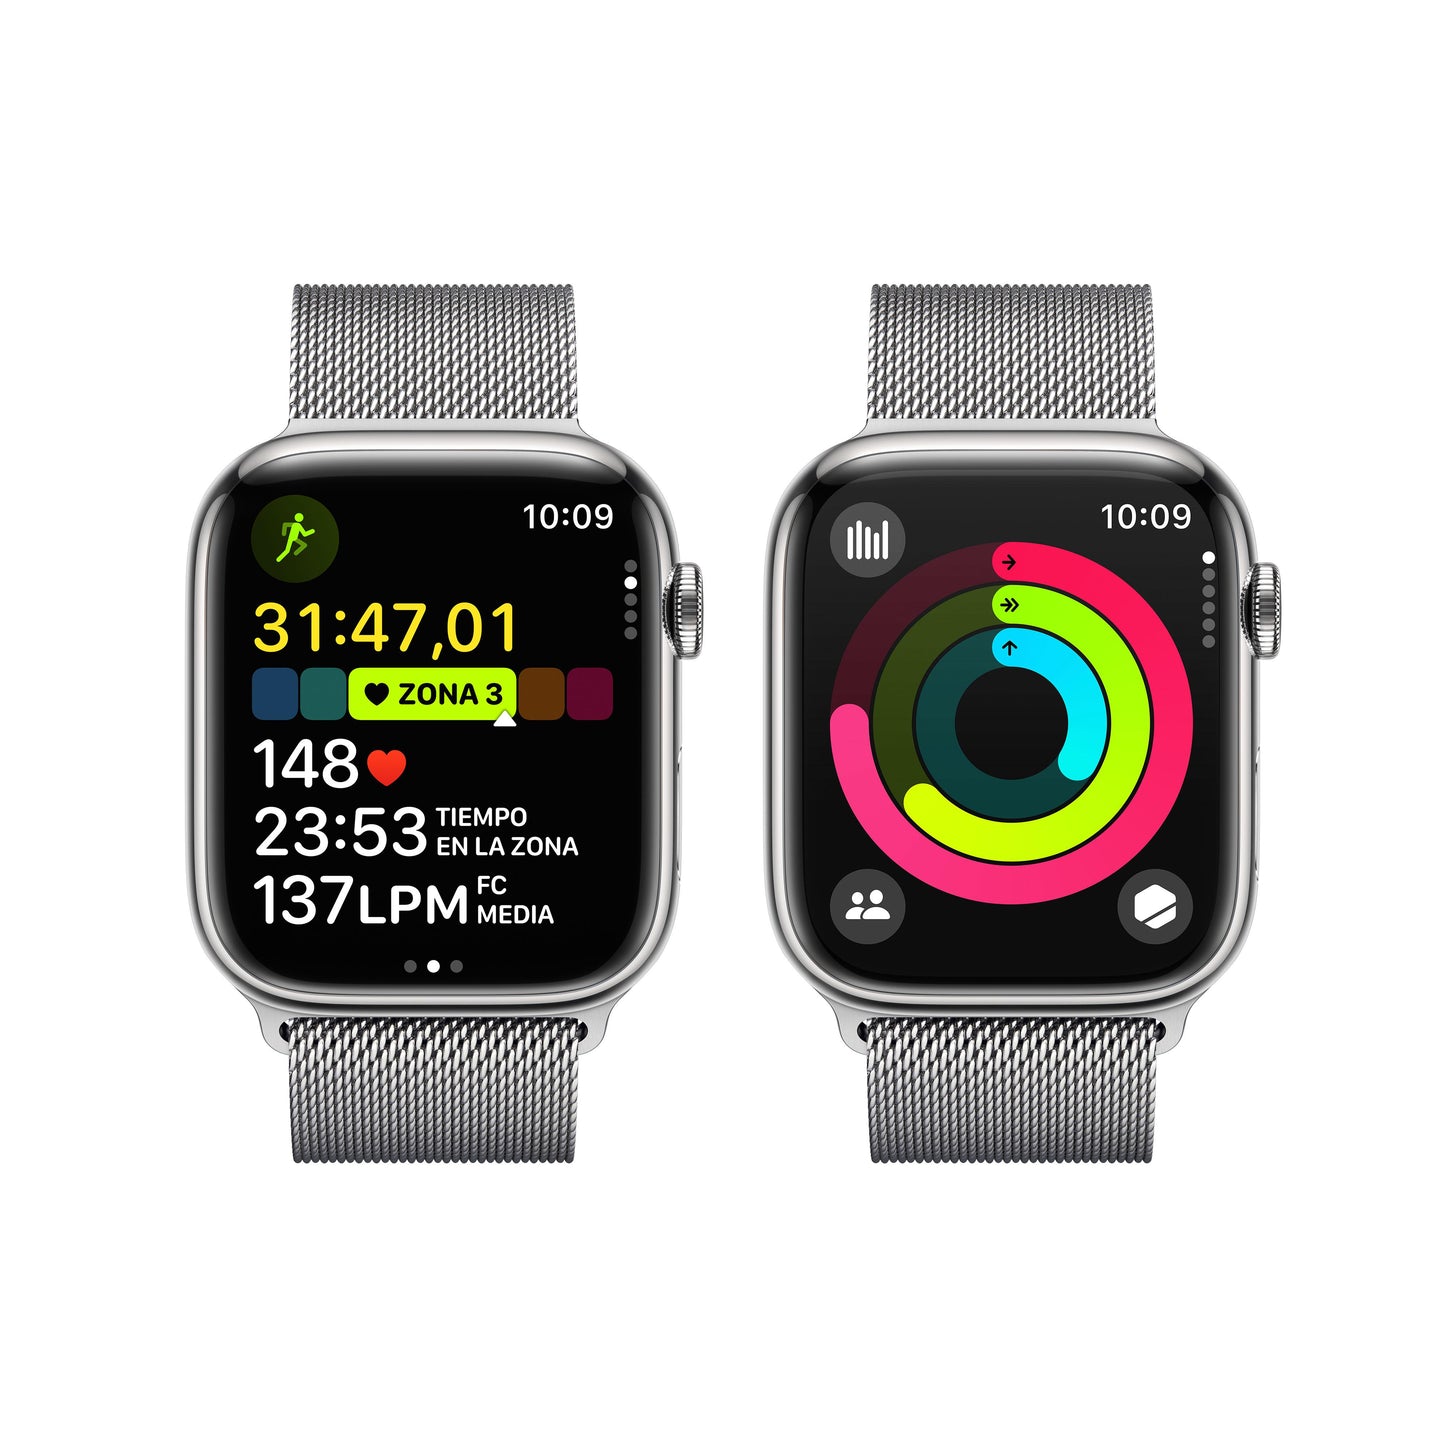 Apple Watch Series 9 (GPS + Cellular) - Caja de acero inoxidable en plata de 45 mm - Pulsera Milanese Loop en plata